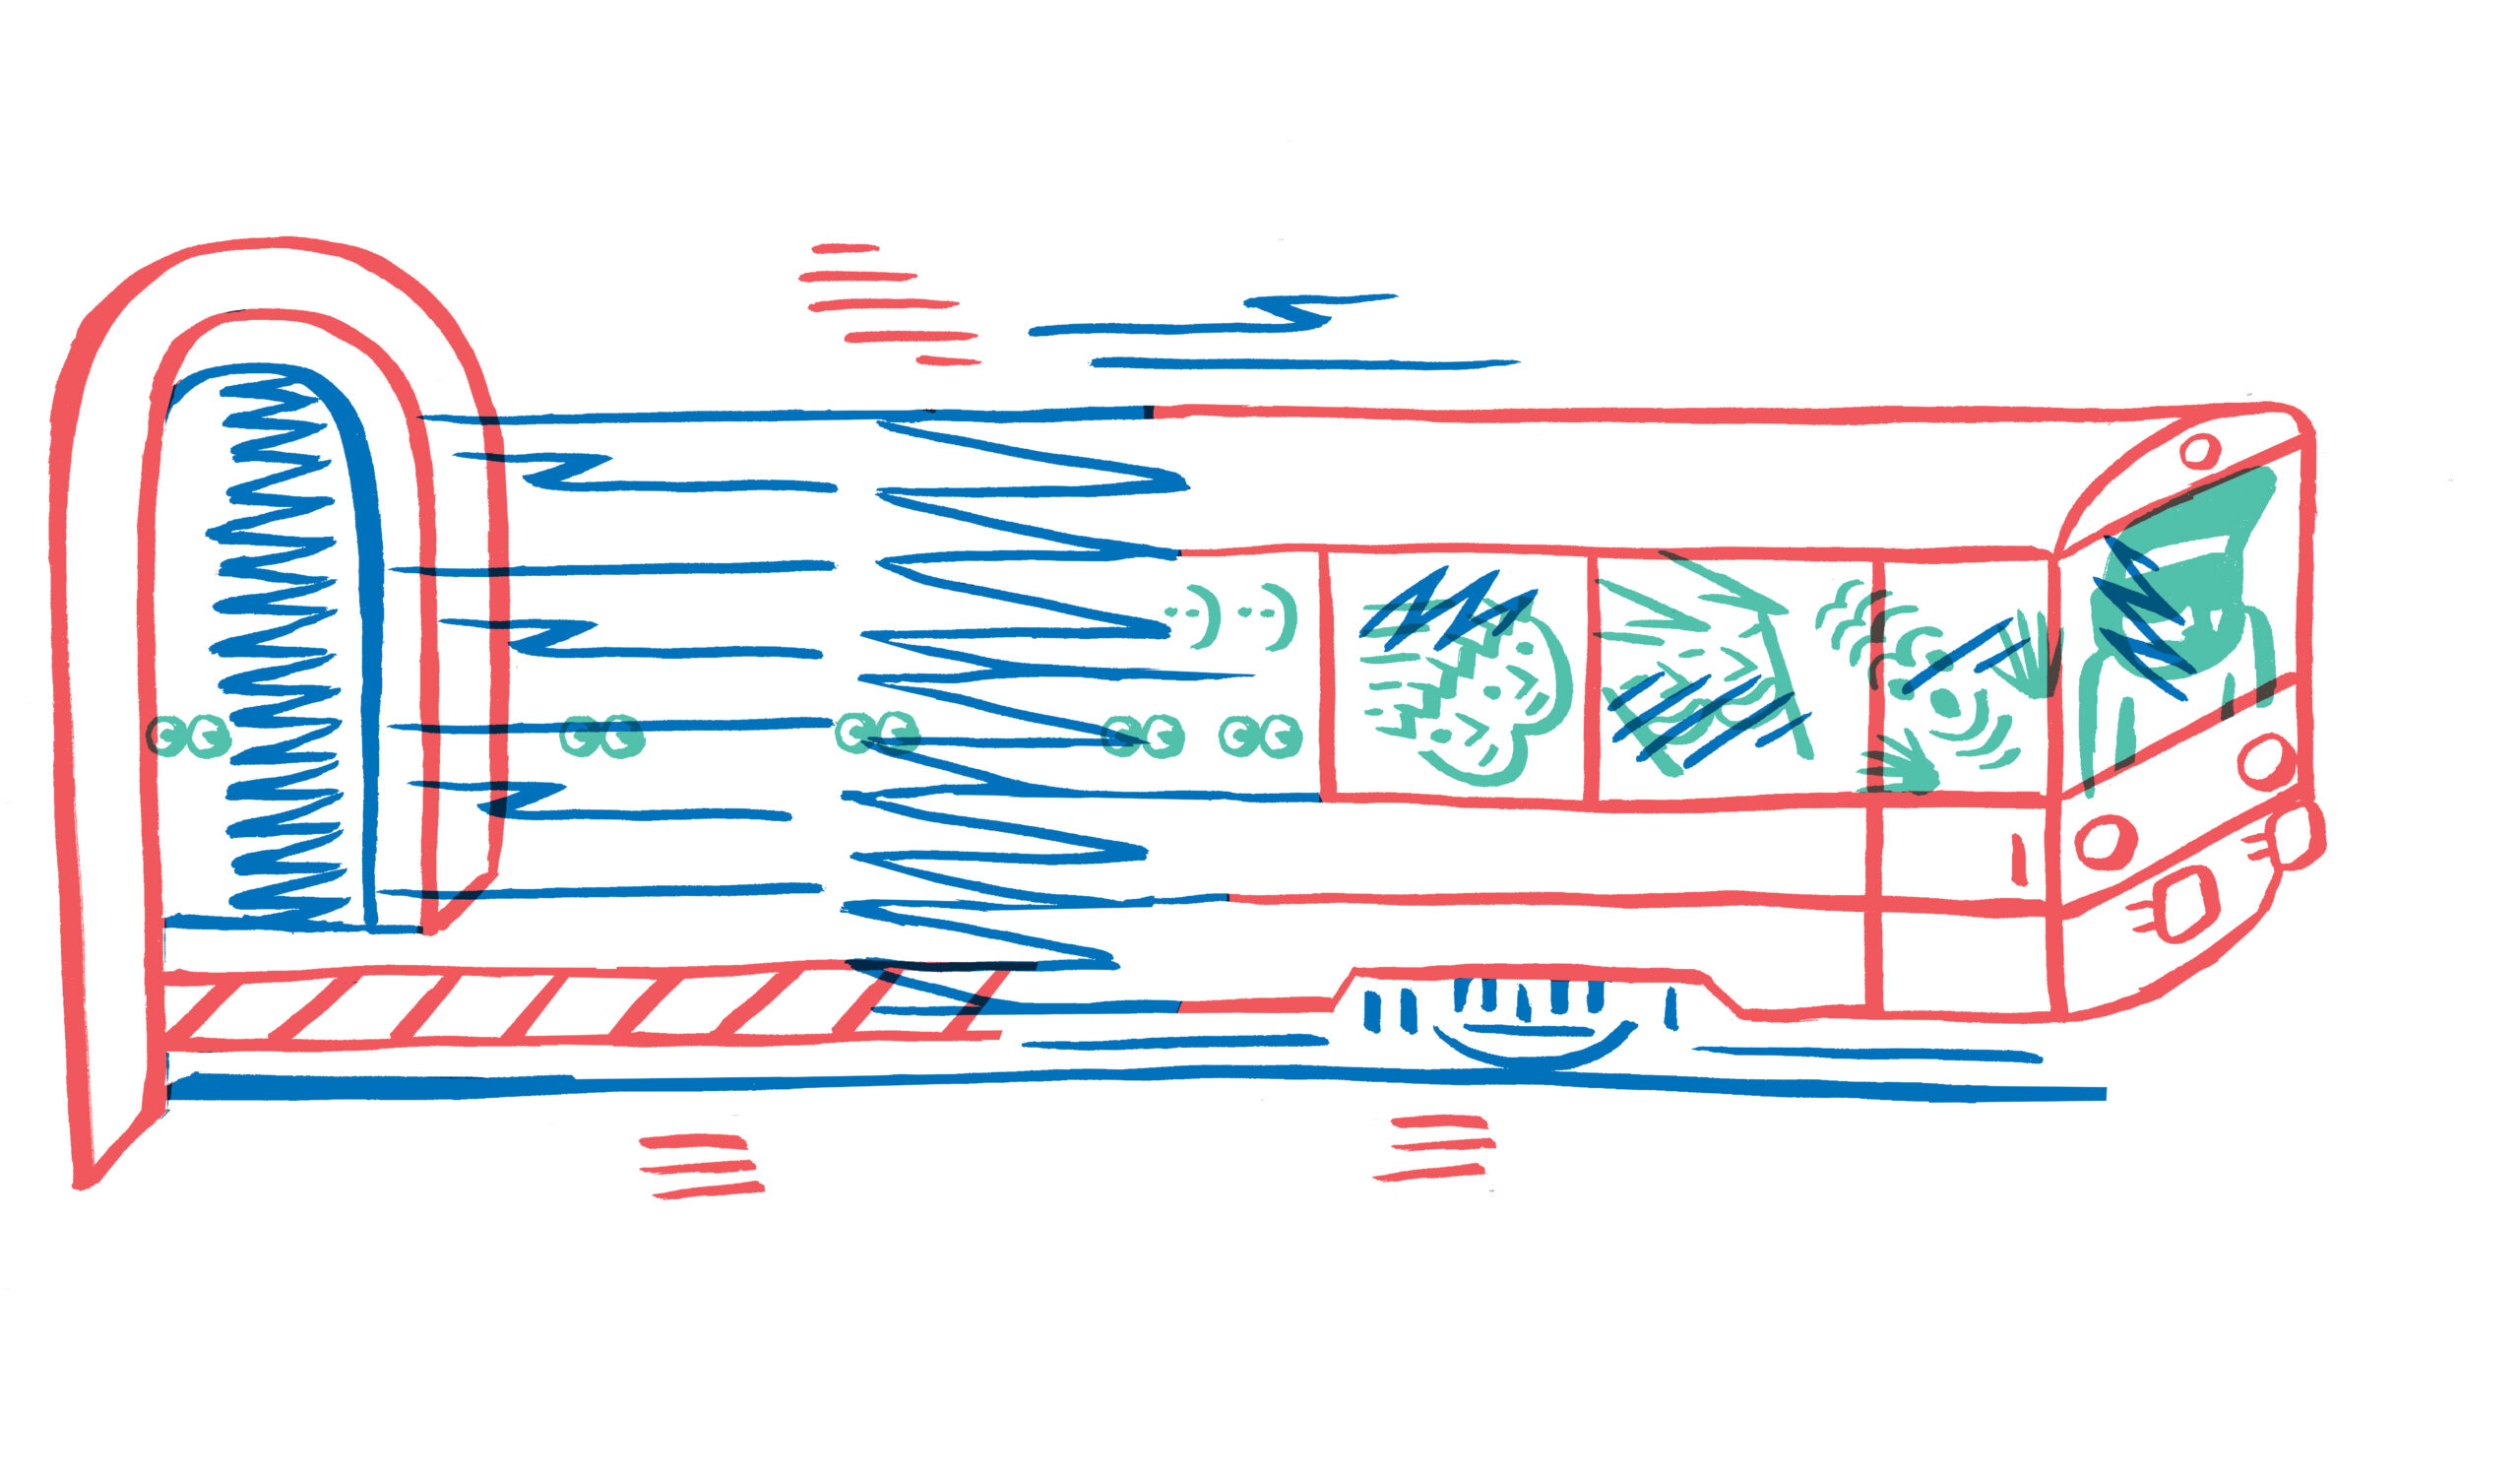 Barevná ilustrace motorového vlaku.